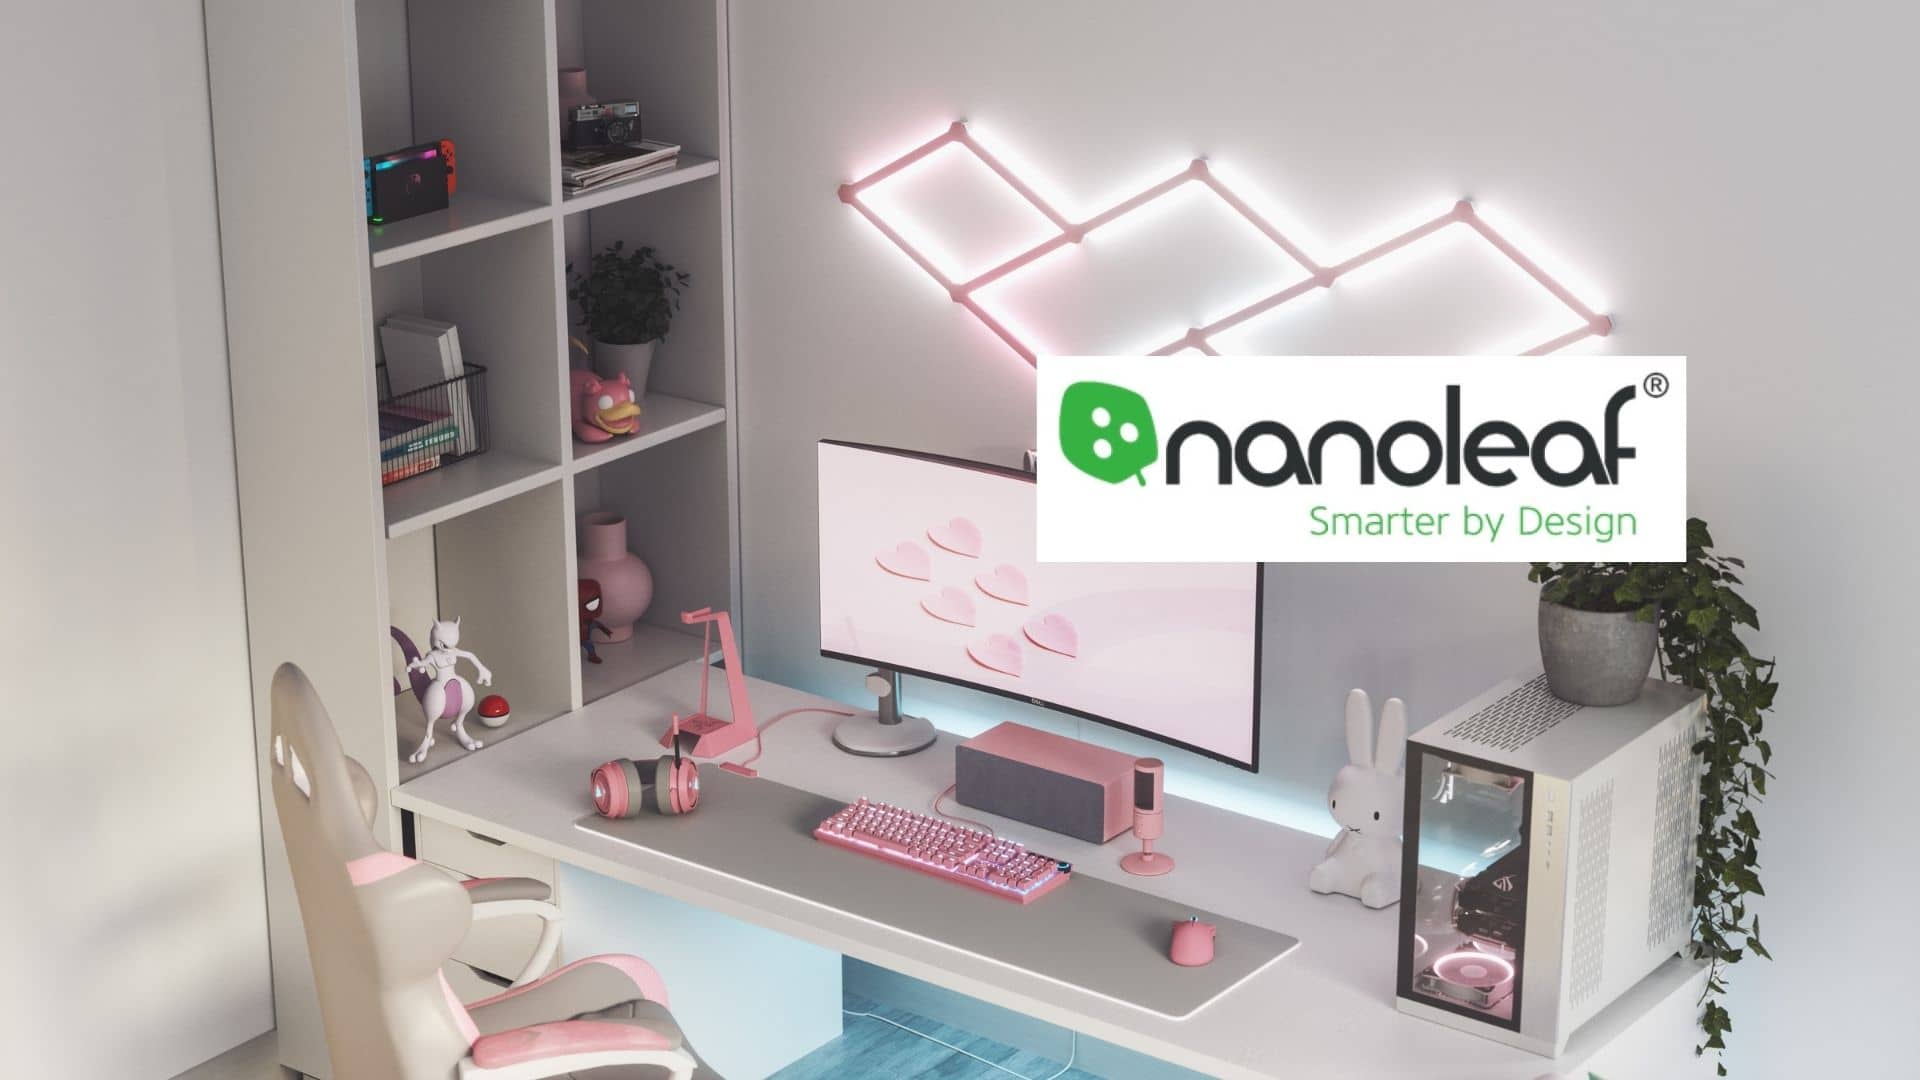 Nanoleaf dévoile ses nouveaux accessoires les Lines Skins